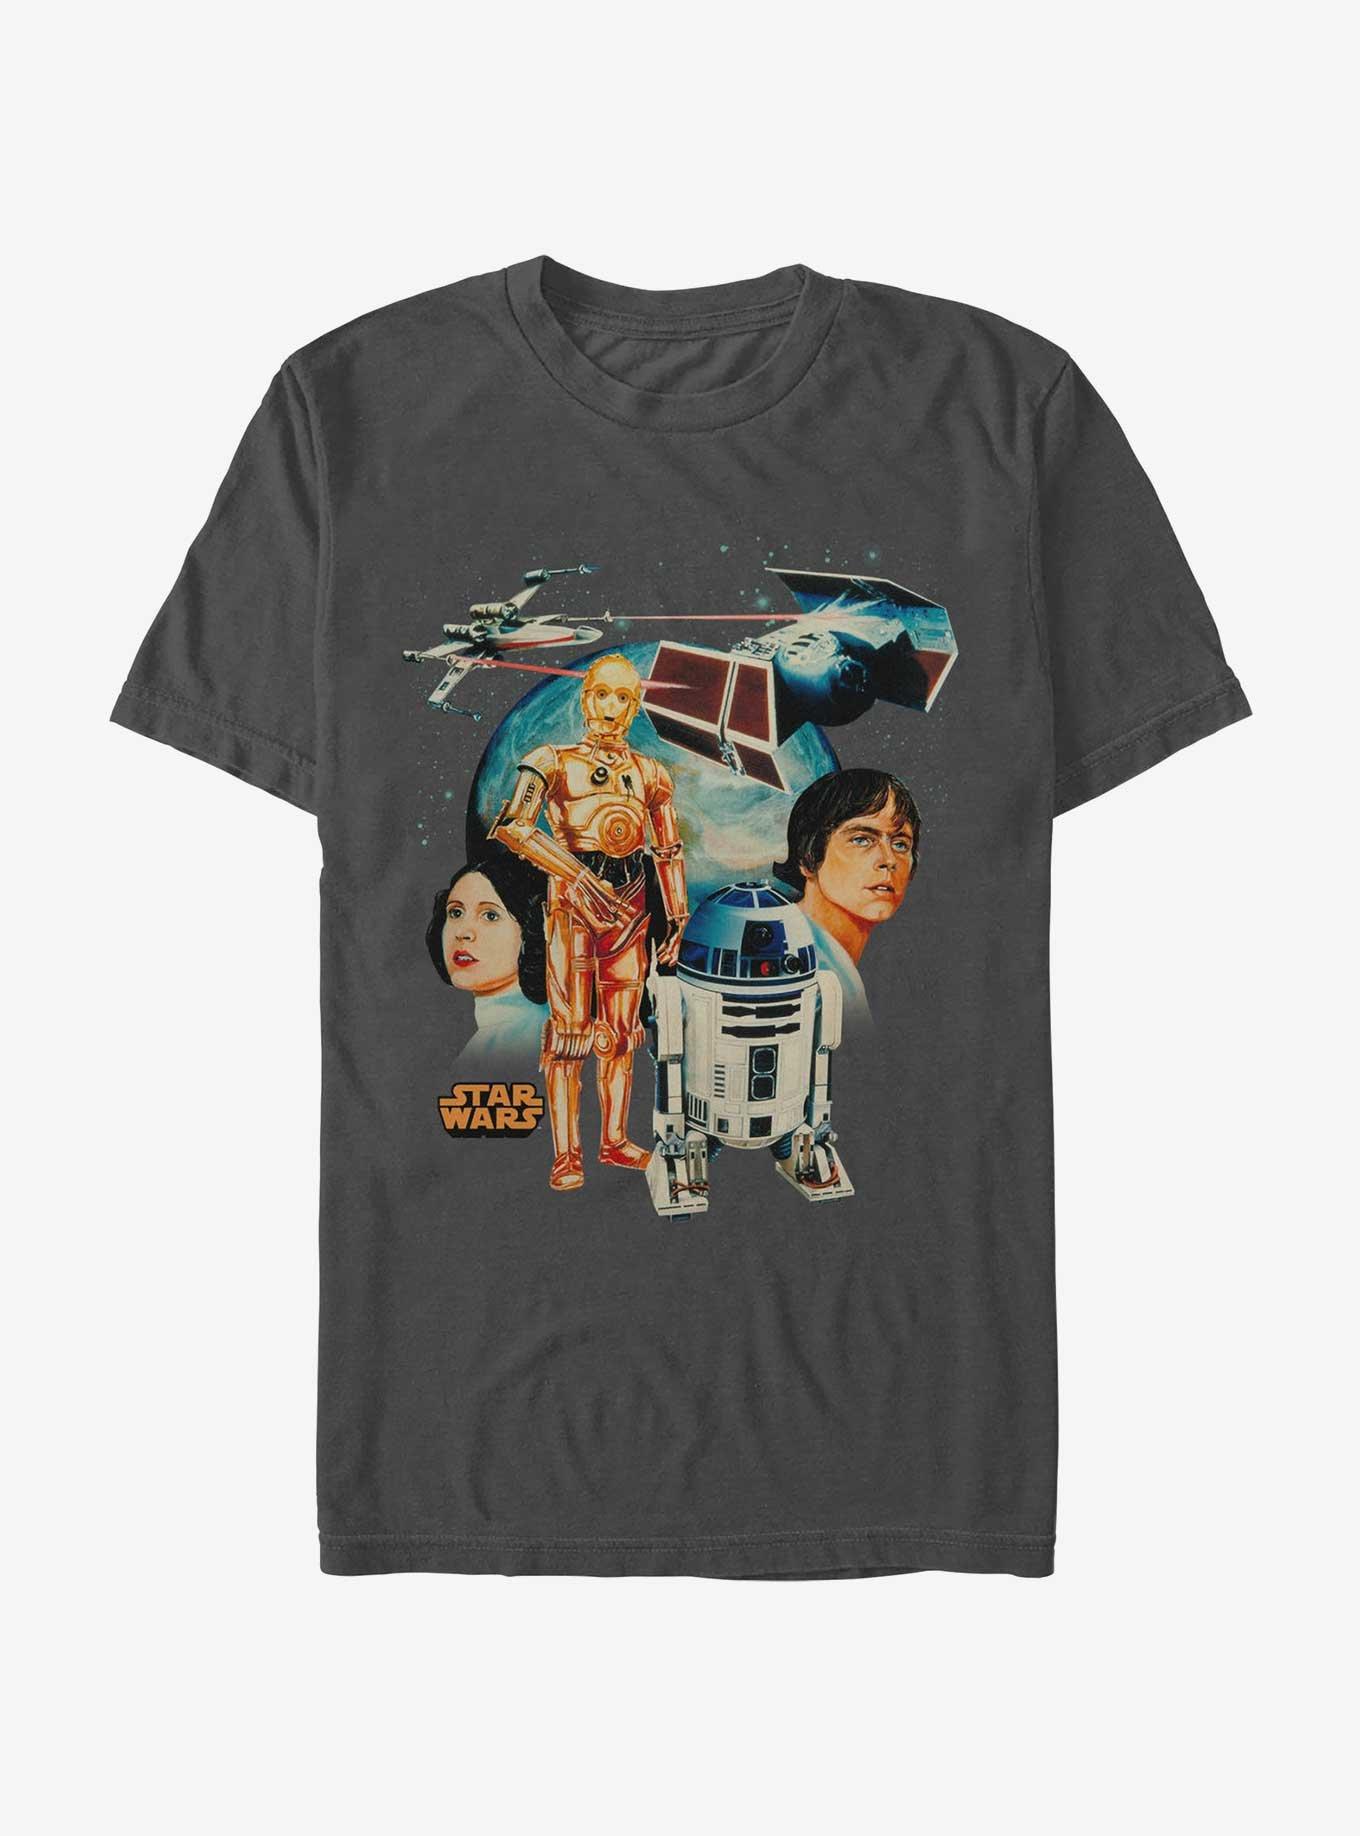 Star Wars Visions Past T-Shirt